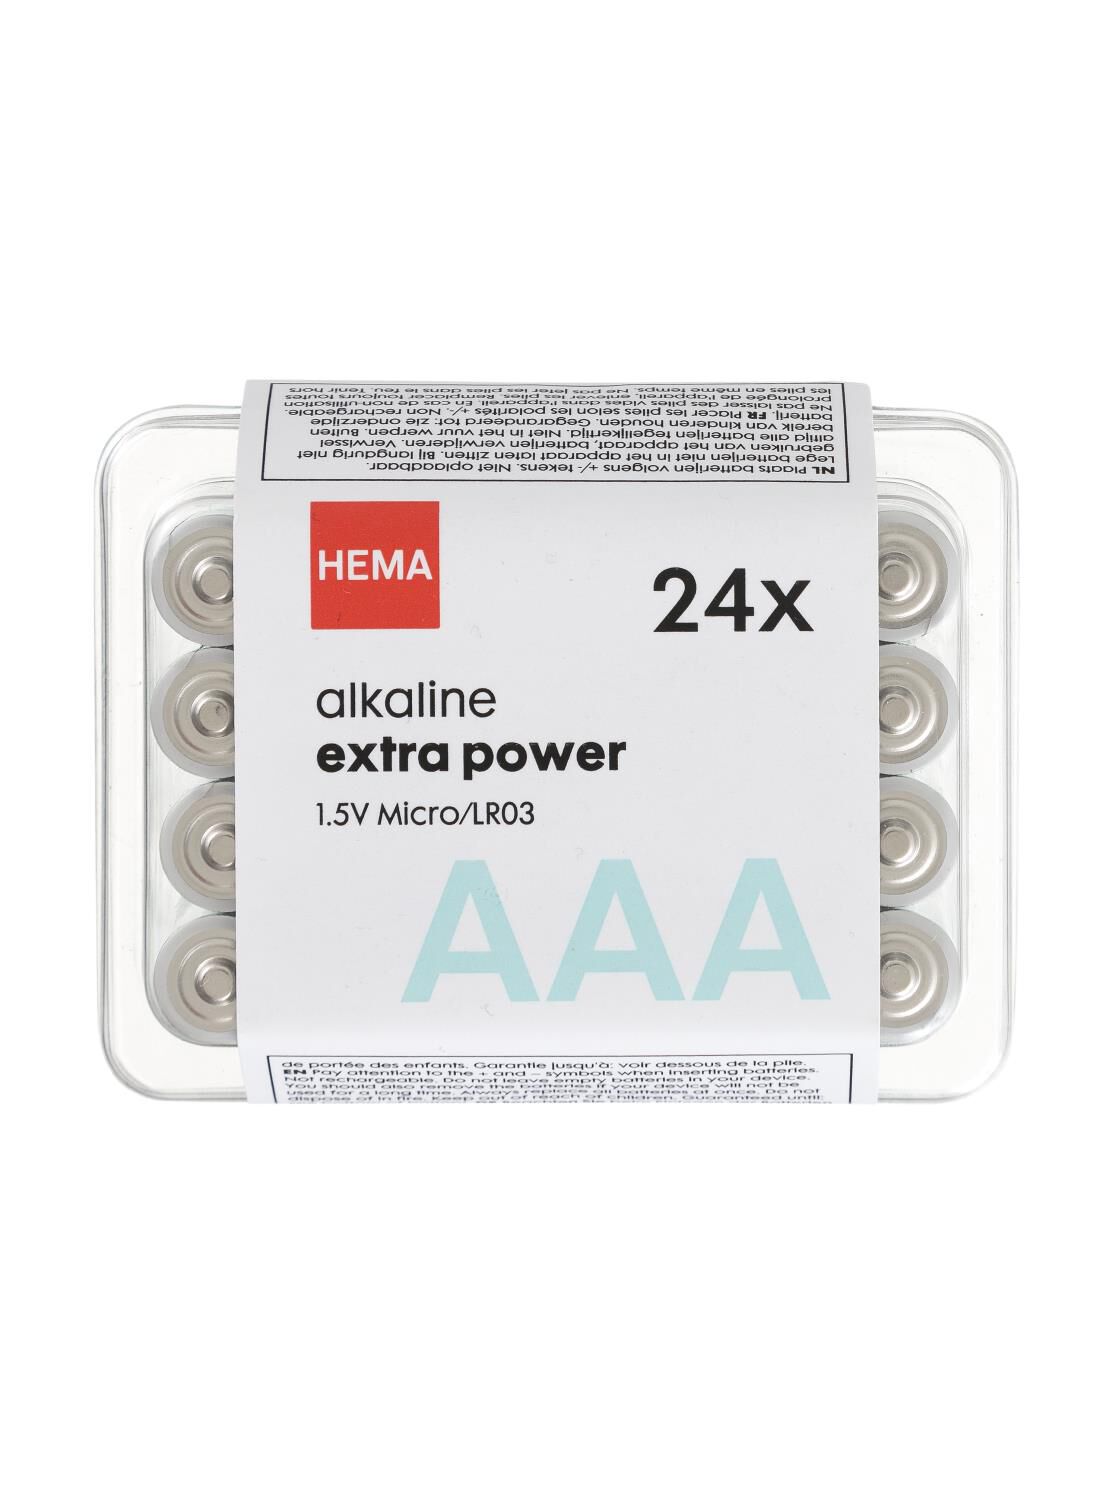 extract Vleien importeren AAA alkaline extra power batterijen - 24 stuks - HEMA